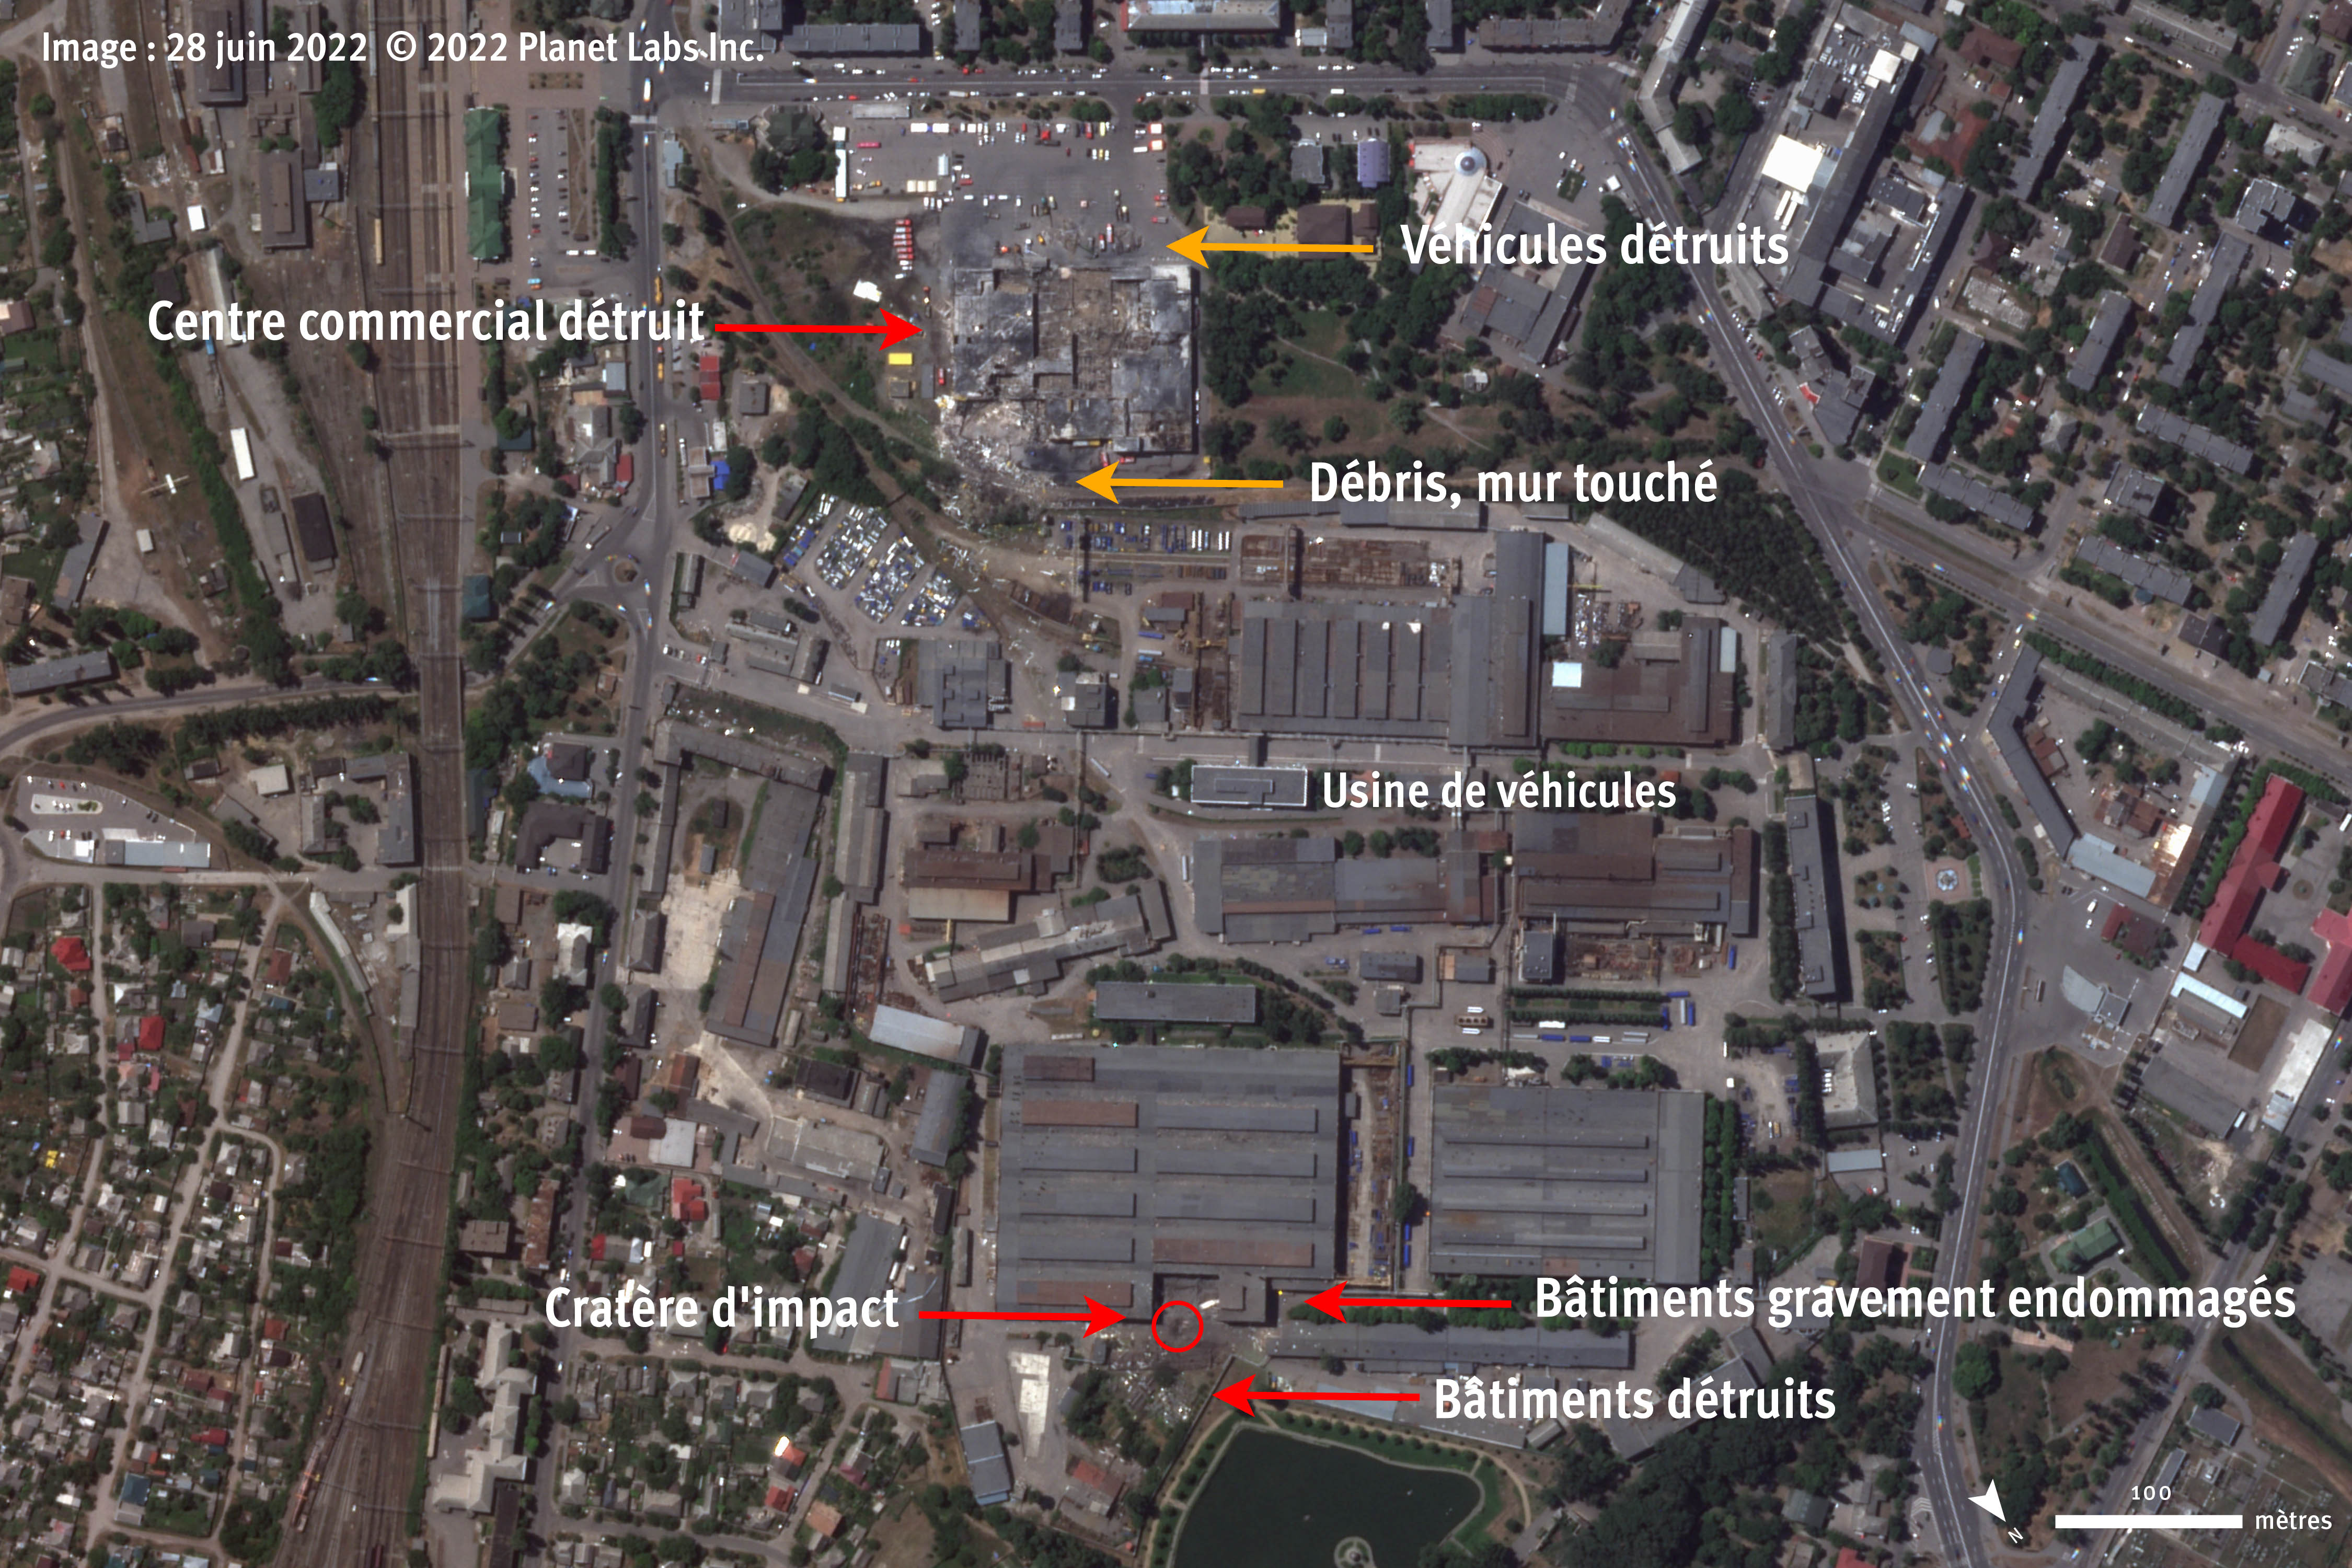 Image satellite montrant la destruction et les dommages subis par le centre commercial de Krementchouk, en Ukraine, touché par une frappe russe le 27 juin 2022 (haut de l’image), l'usine de véhicules voisine (milieu de l’image), et des immeubles endommagés (bas de l’image). Image enregistrée le 28 juin 2022.  Image satellite